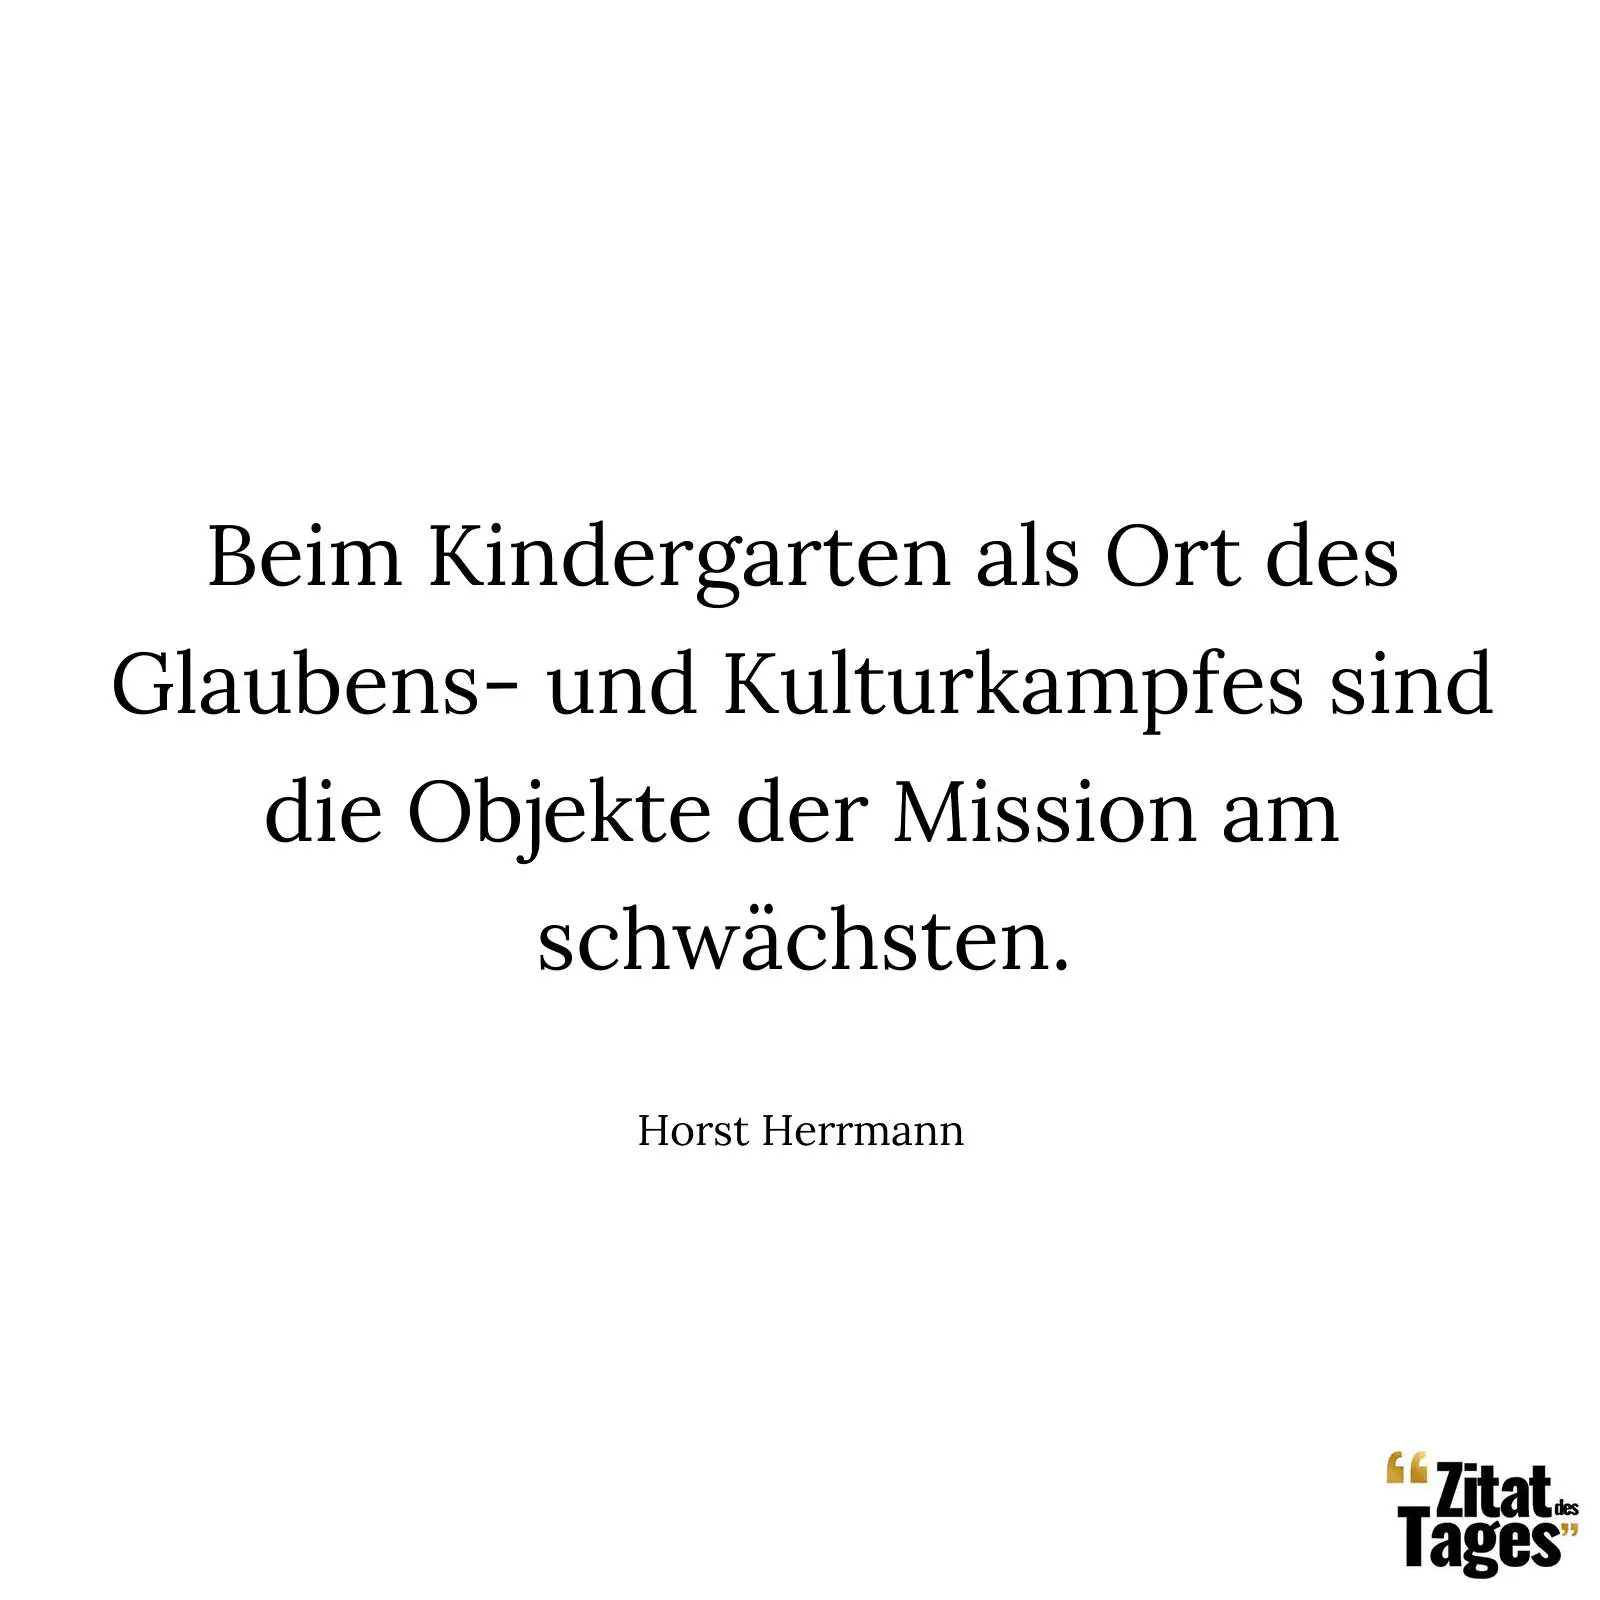 Beim Kindergarten als Ort des Glaubens- und Kulturkampfes sind die Objekte der Mission am schwächsten. - Horst Herrmann